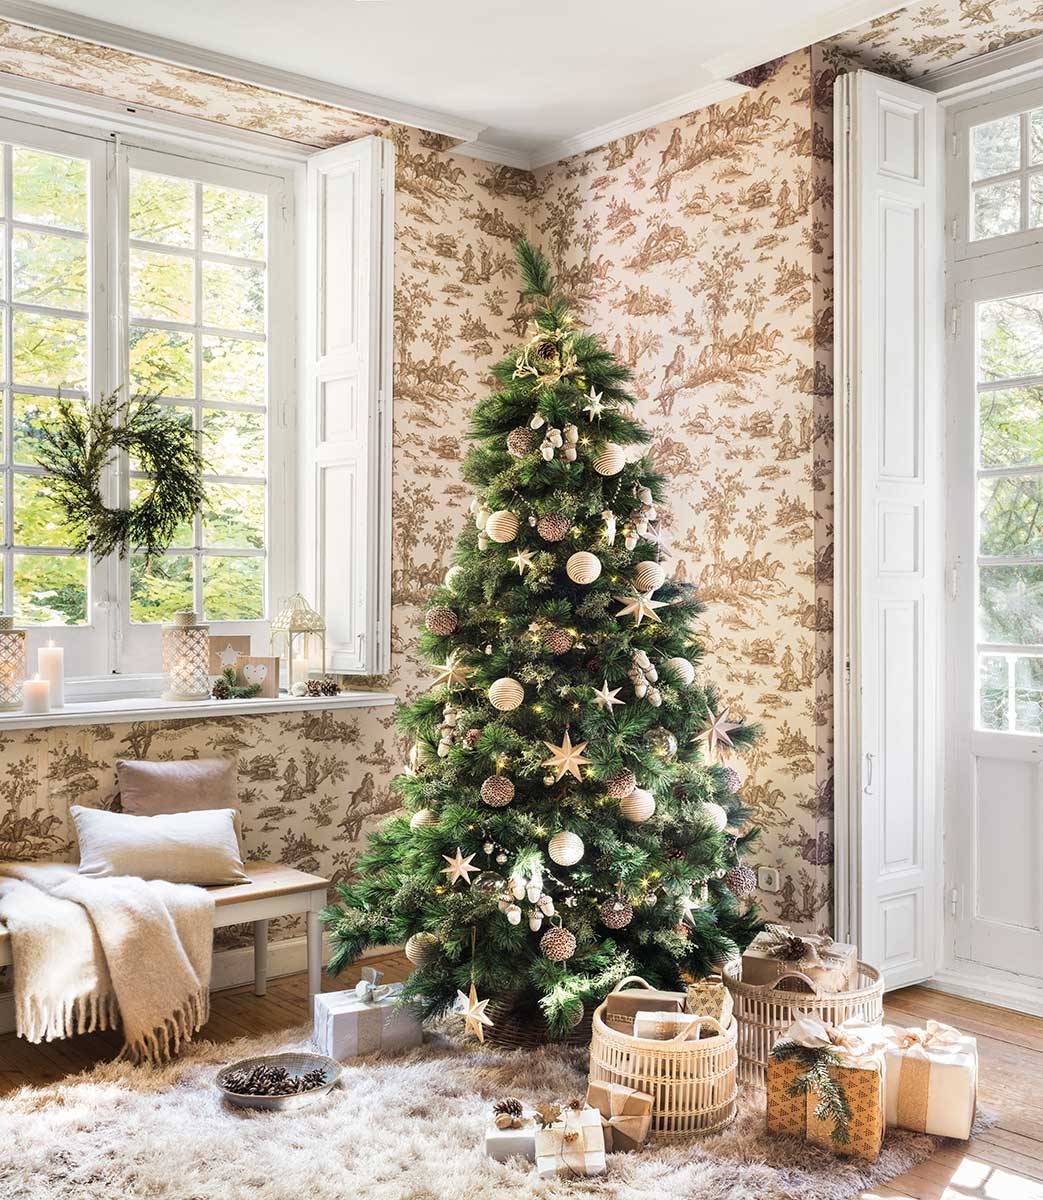 Árbol de Navidad natural para decorar el recibidor.